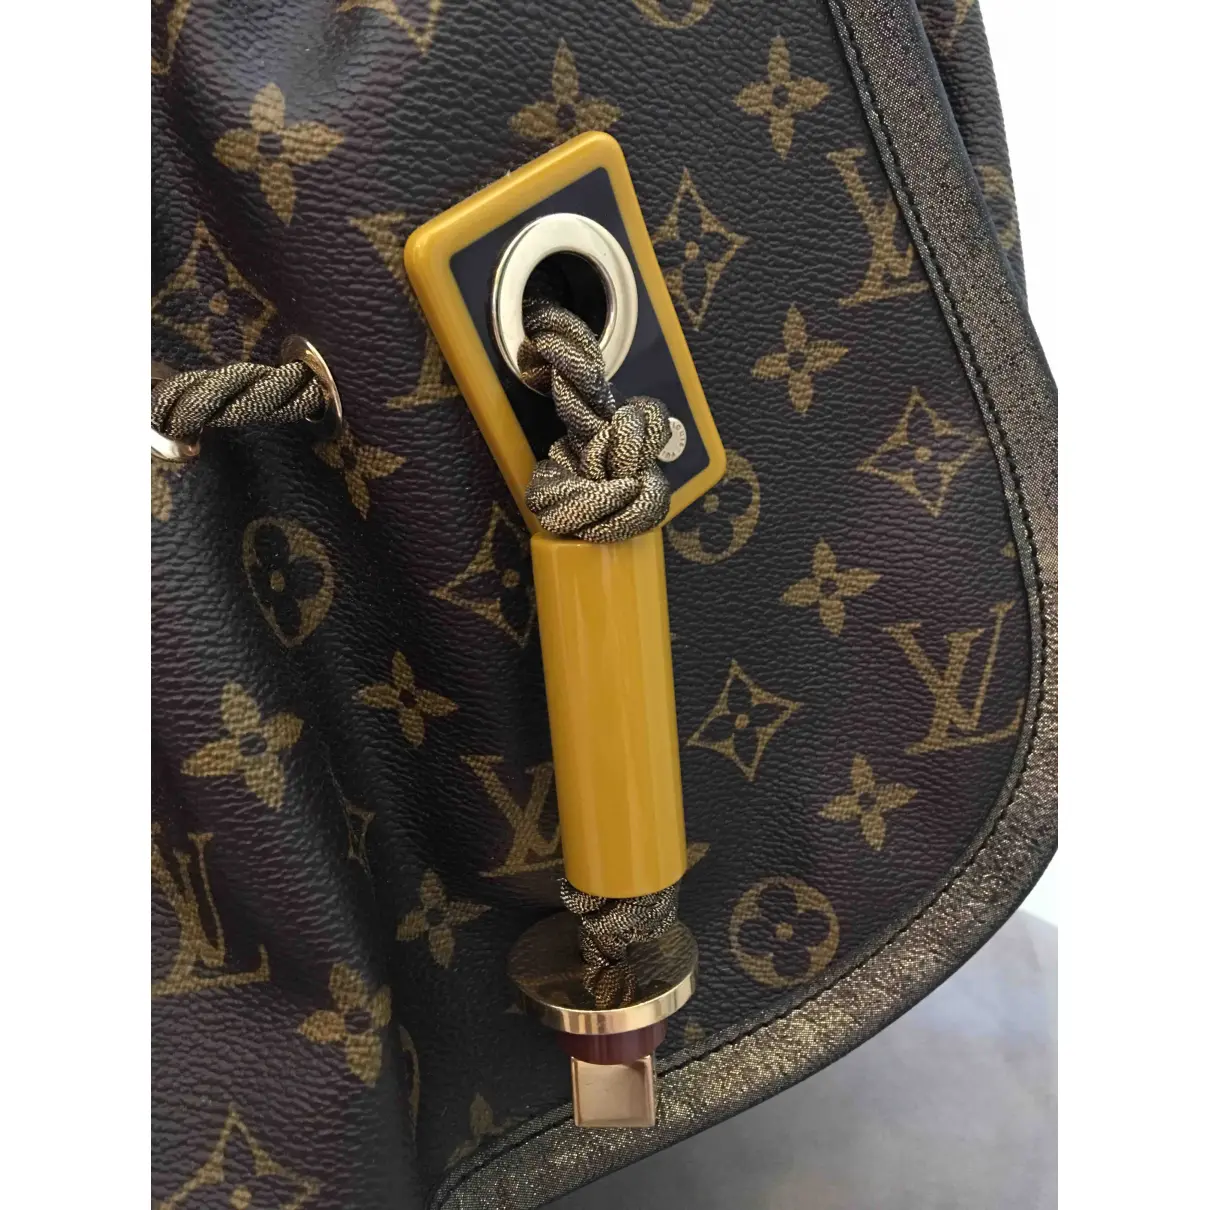 Buy Louis Vuitton Kalahari cloth handbag online